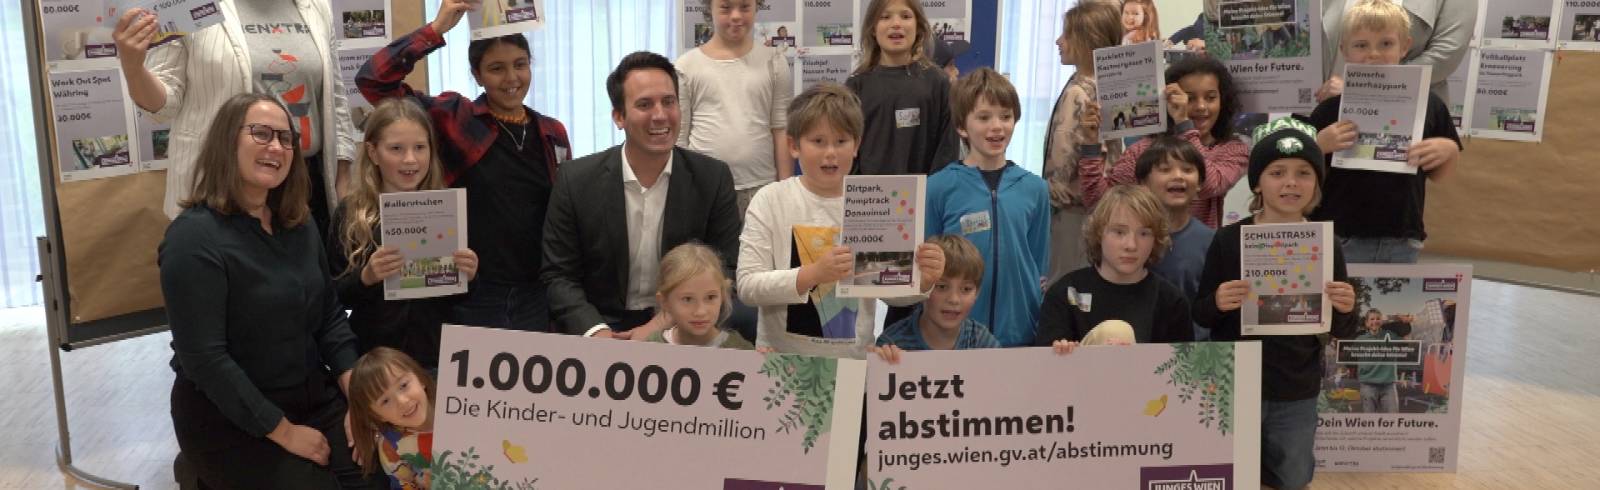 "Dein Wien for Future": Abstimmung startet